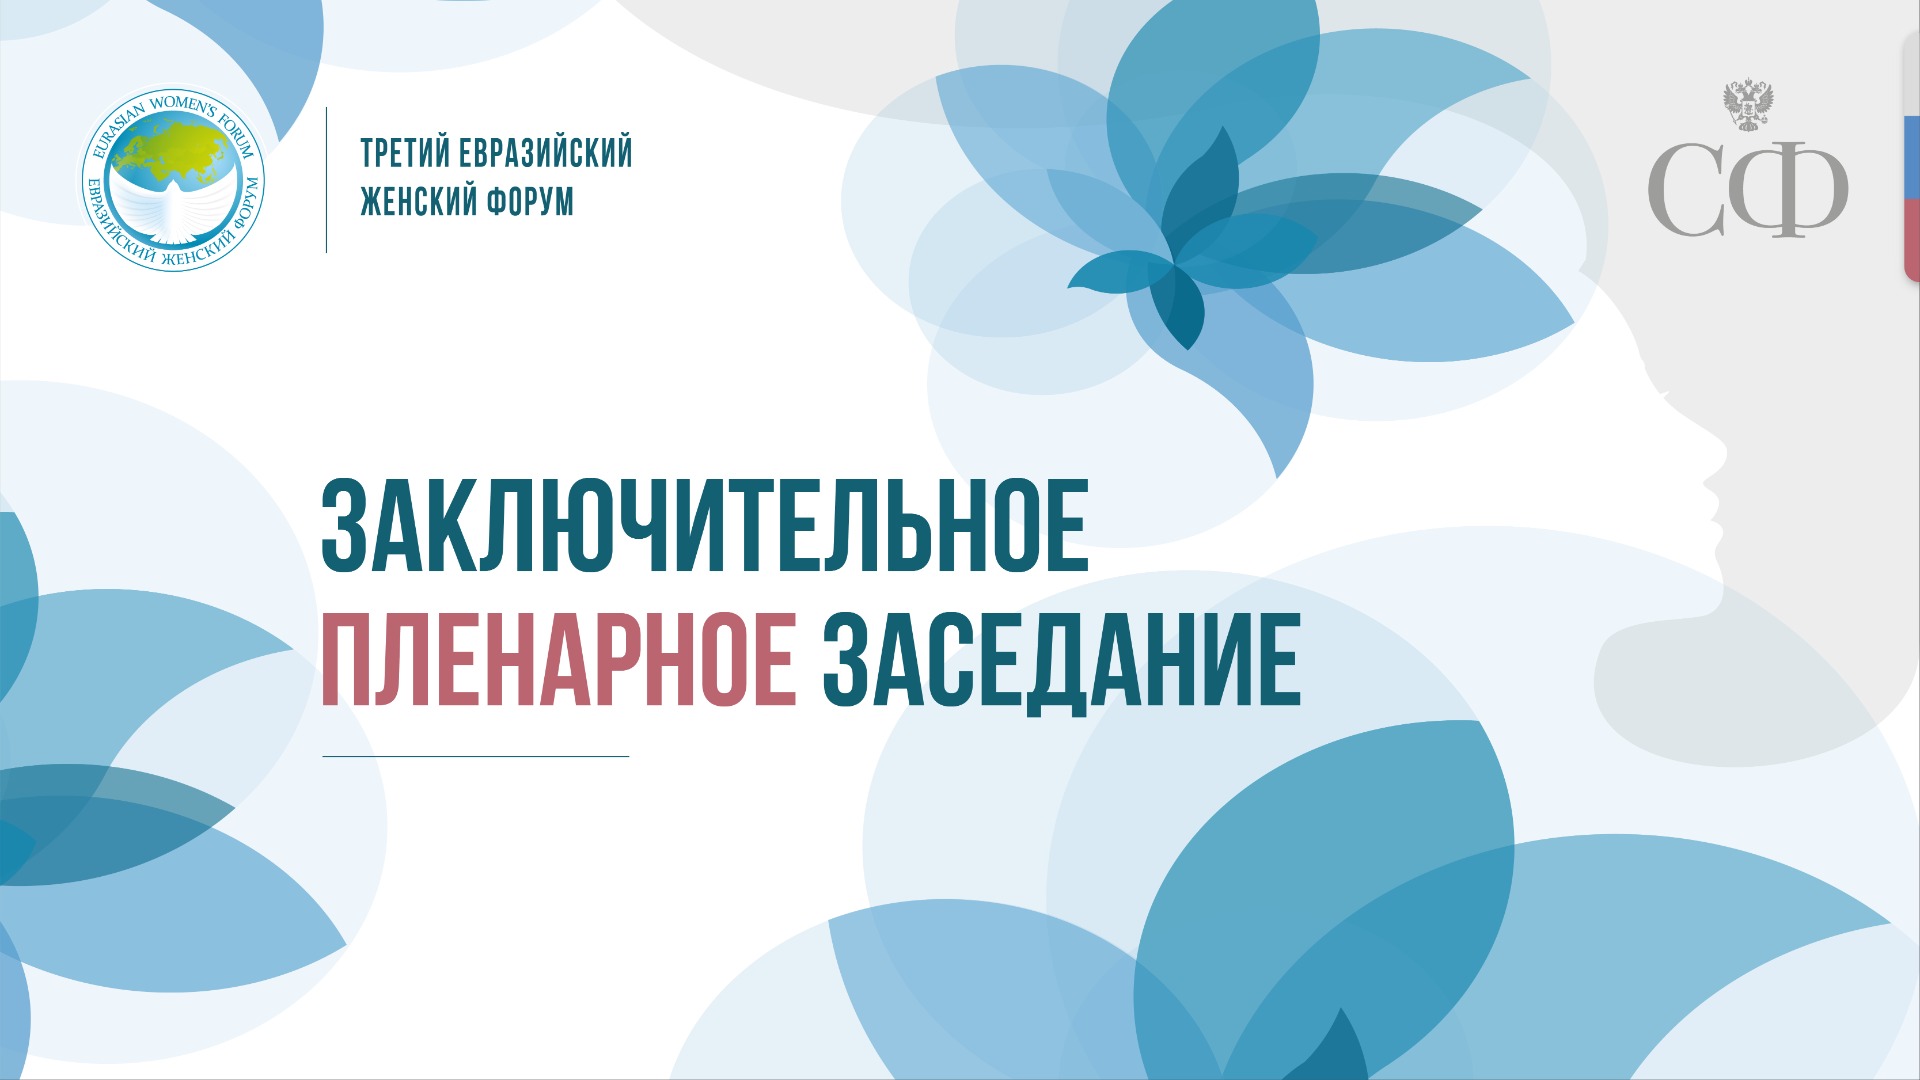 Заключительное пленарное заседание Третьего Евразийского форума